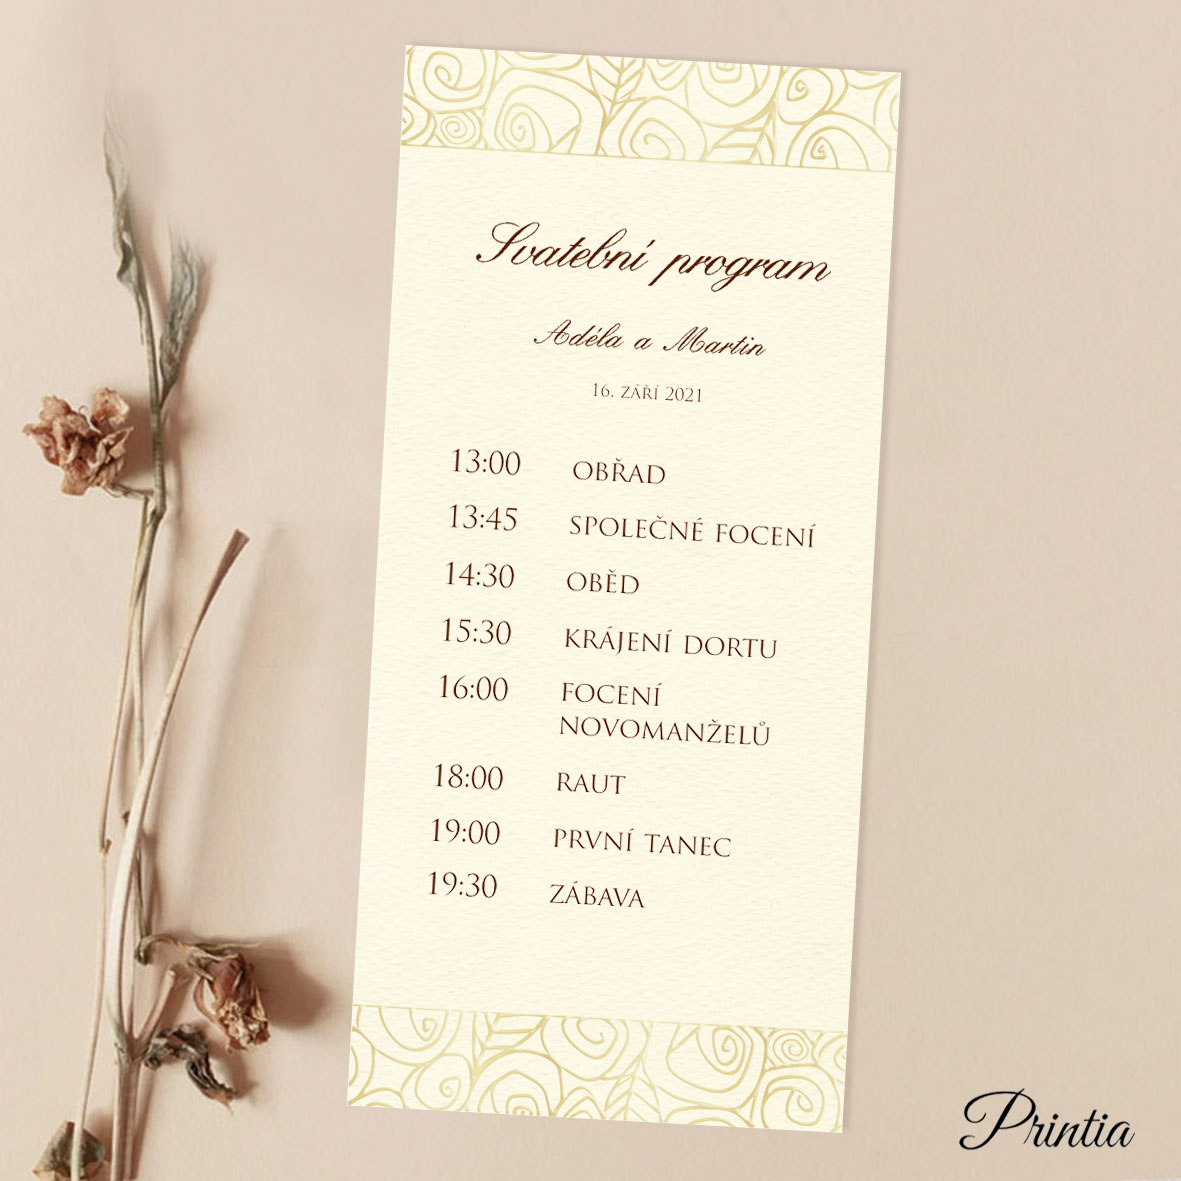 Wedding timeline stylized flowers ornament